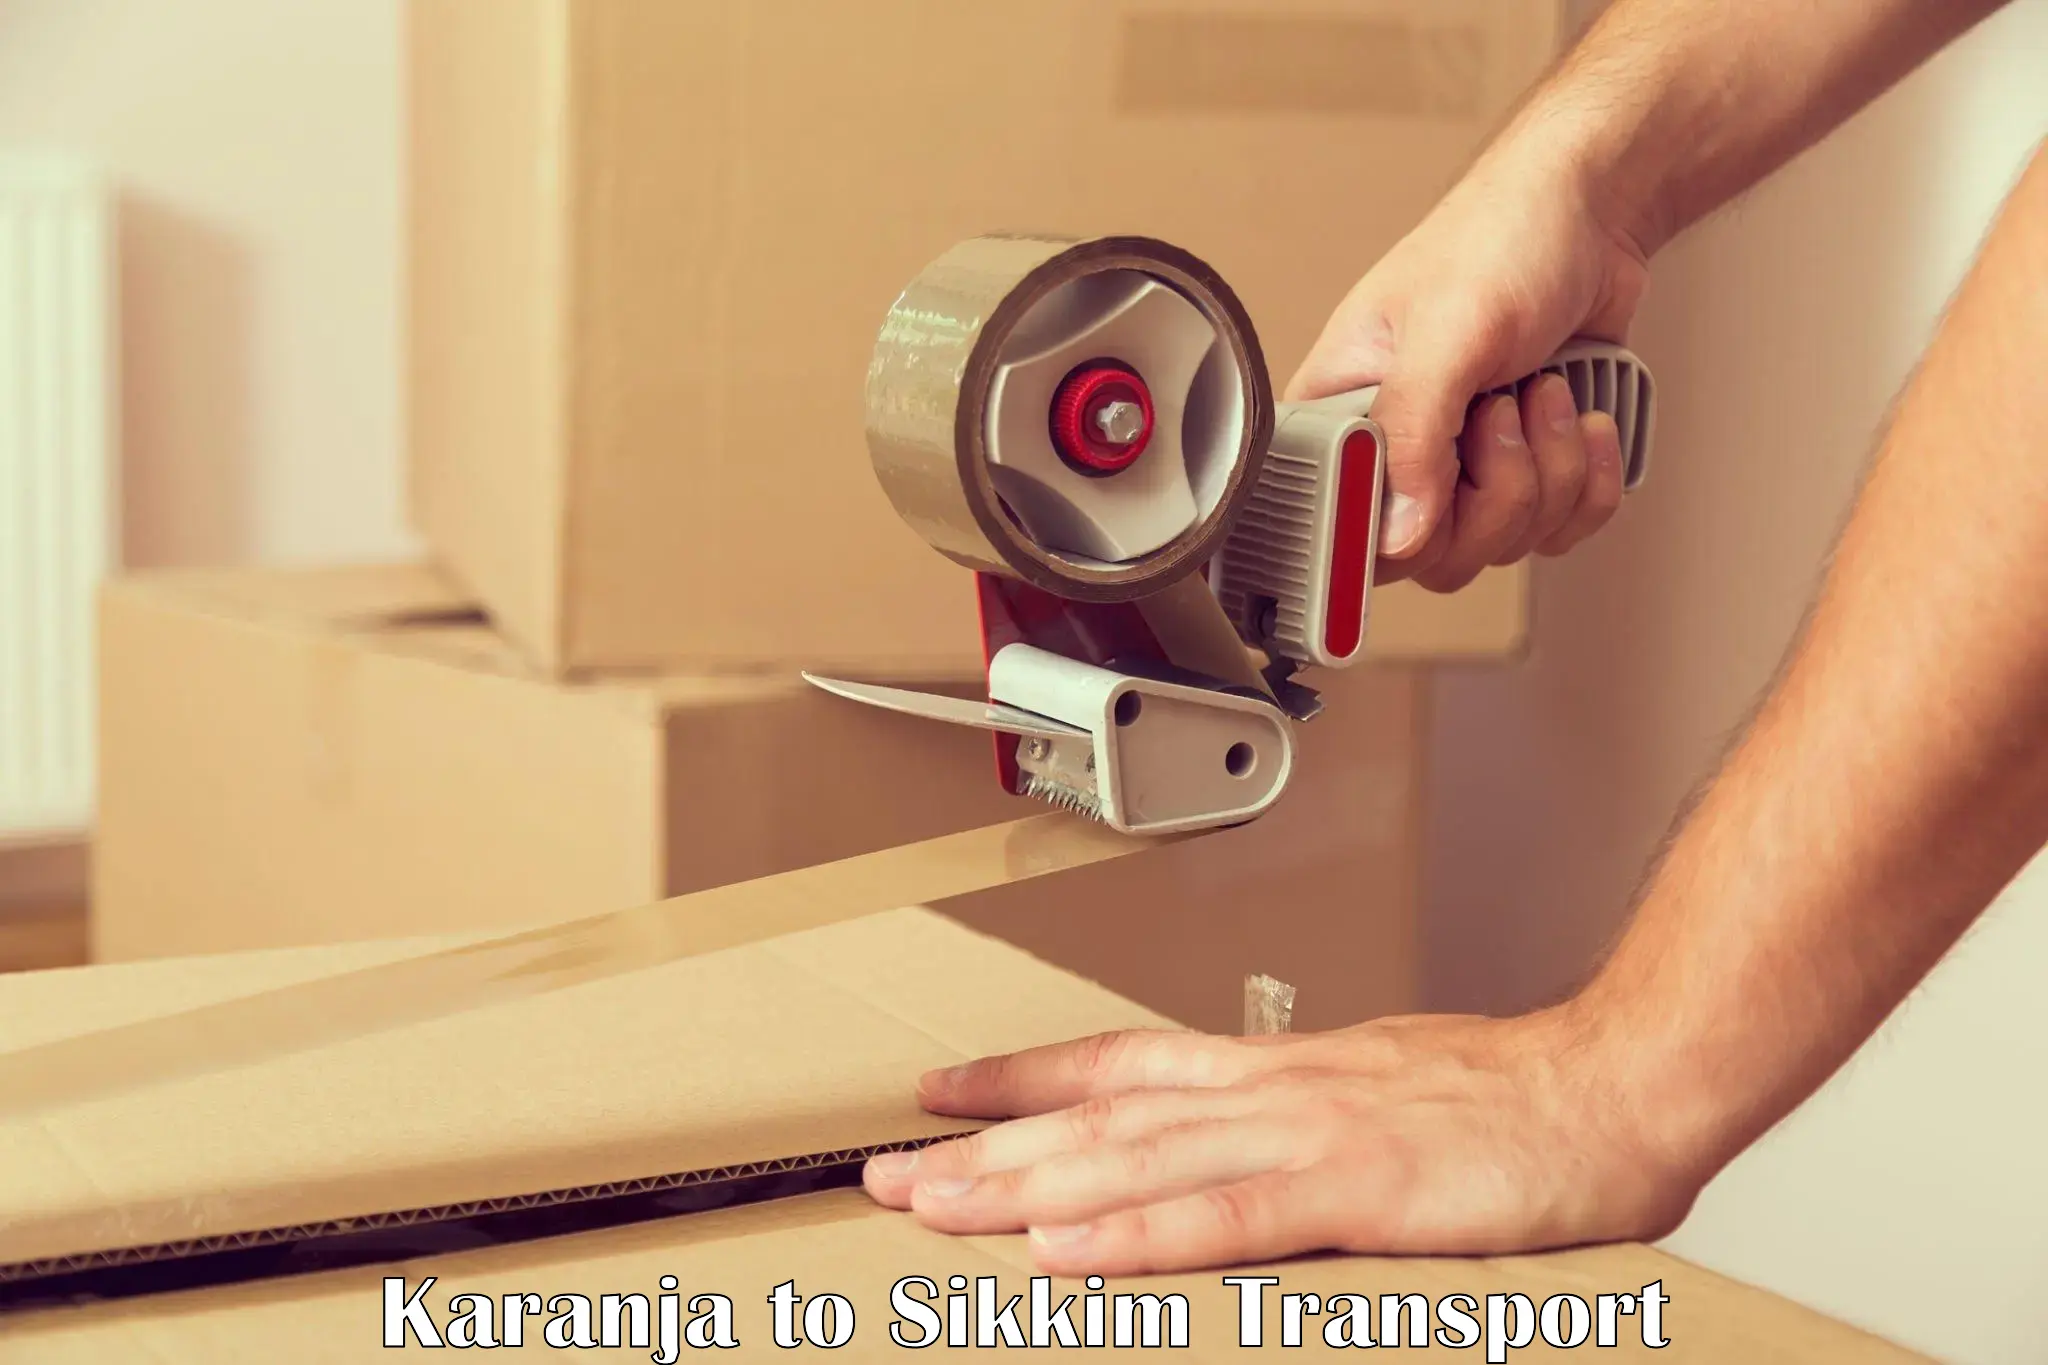 International cargo transportation services Karanja to Mangan